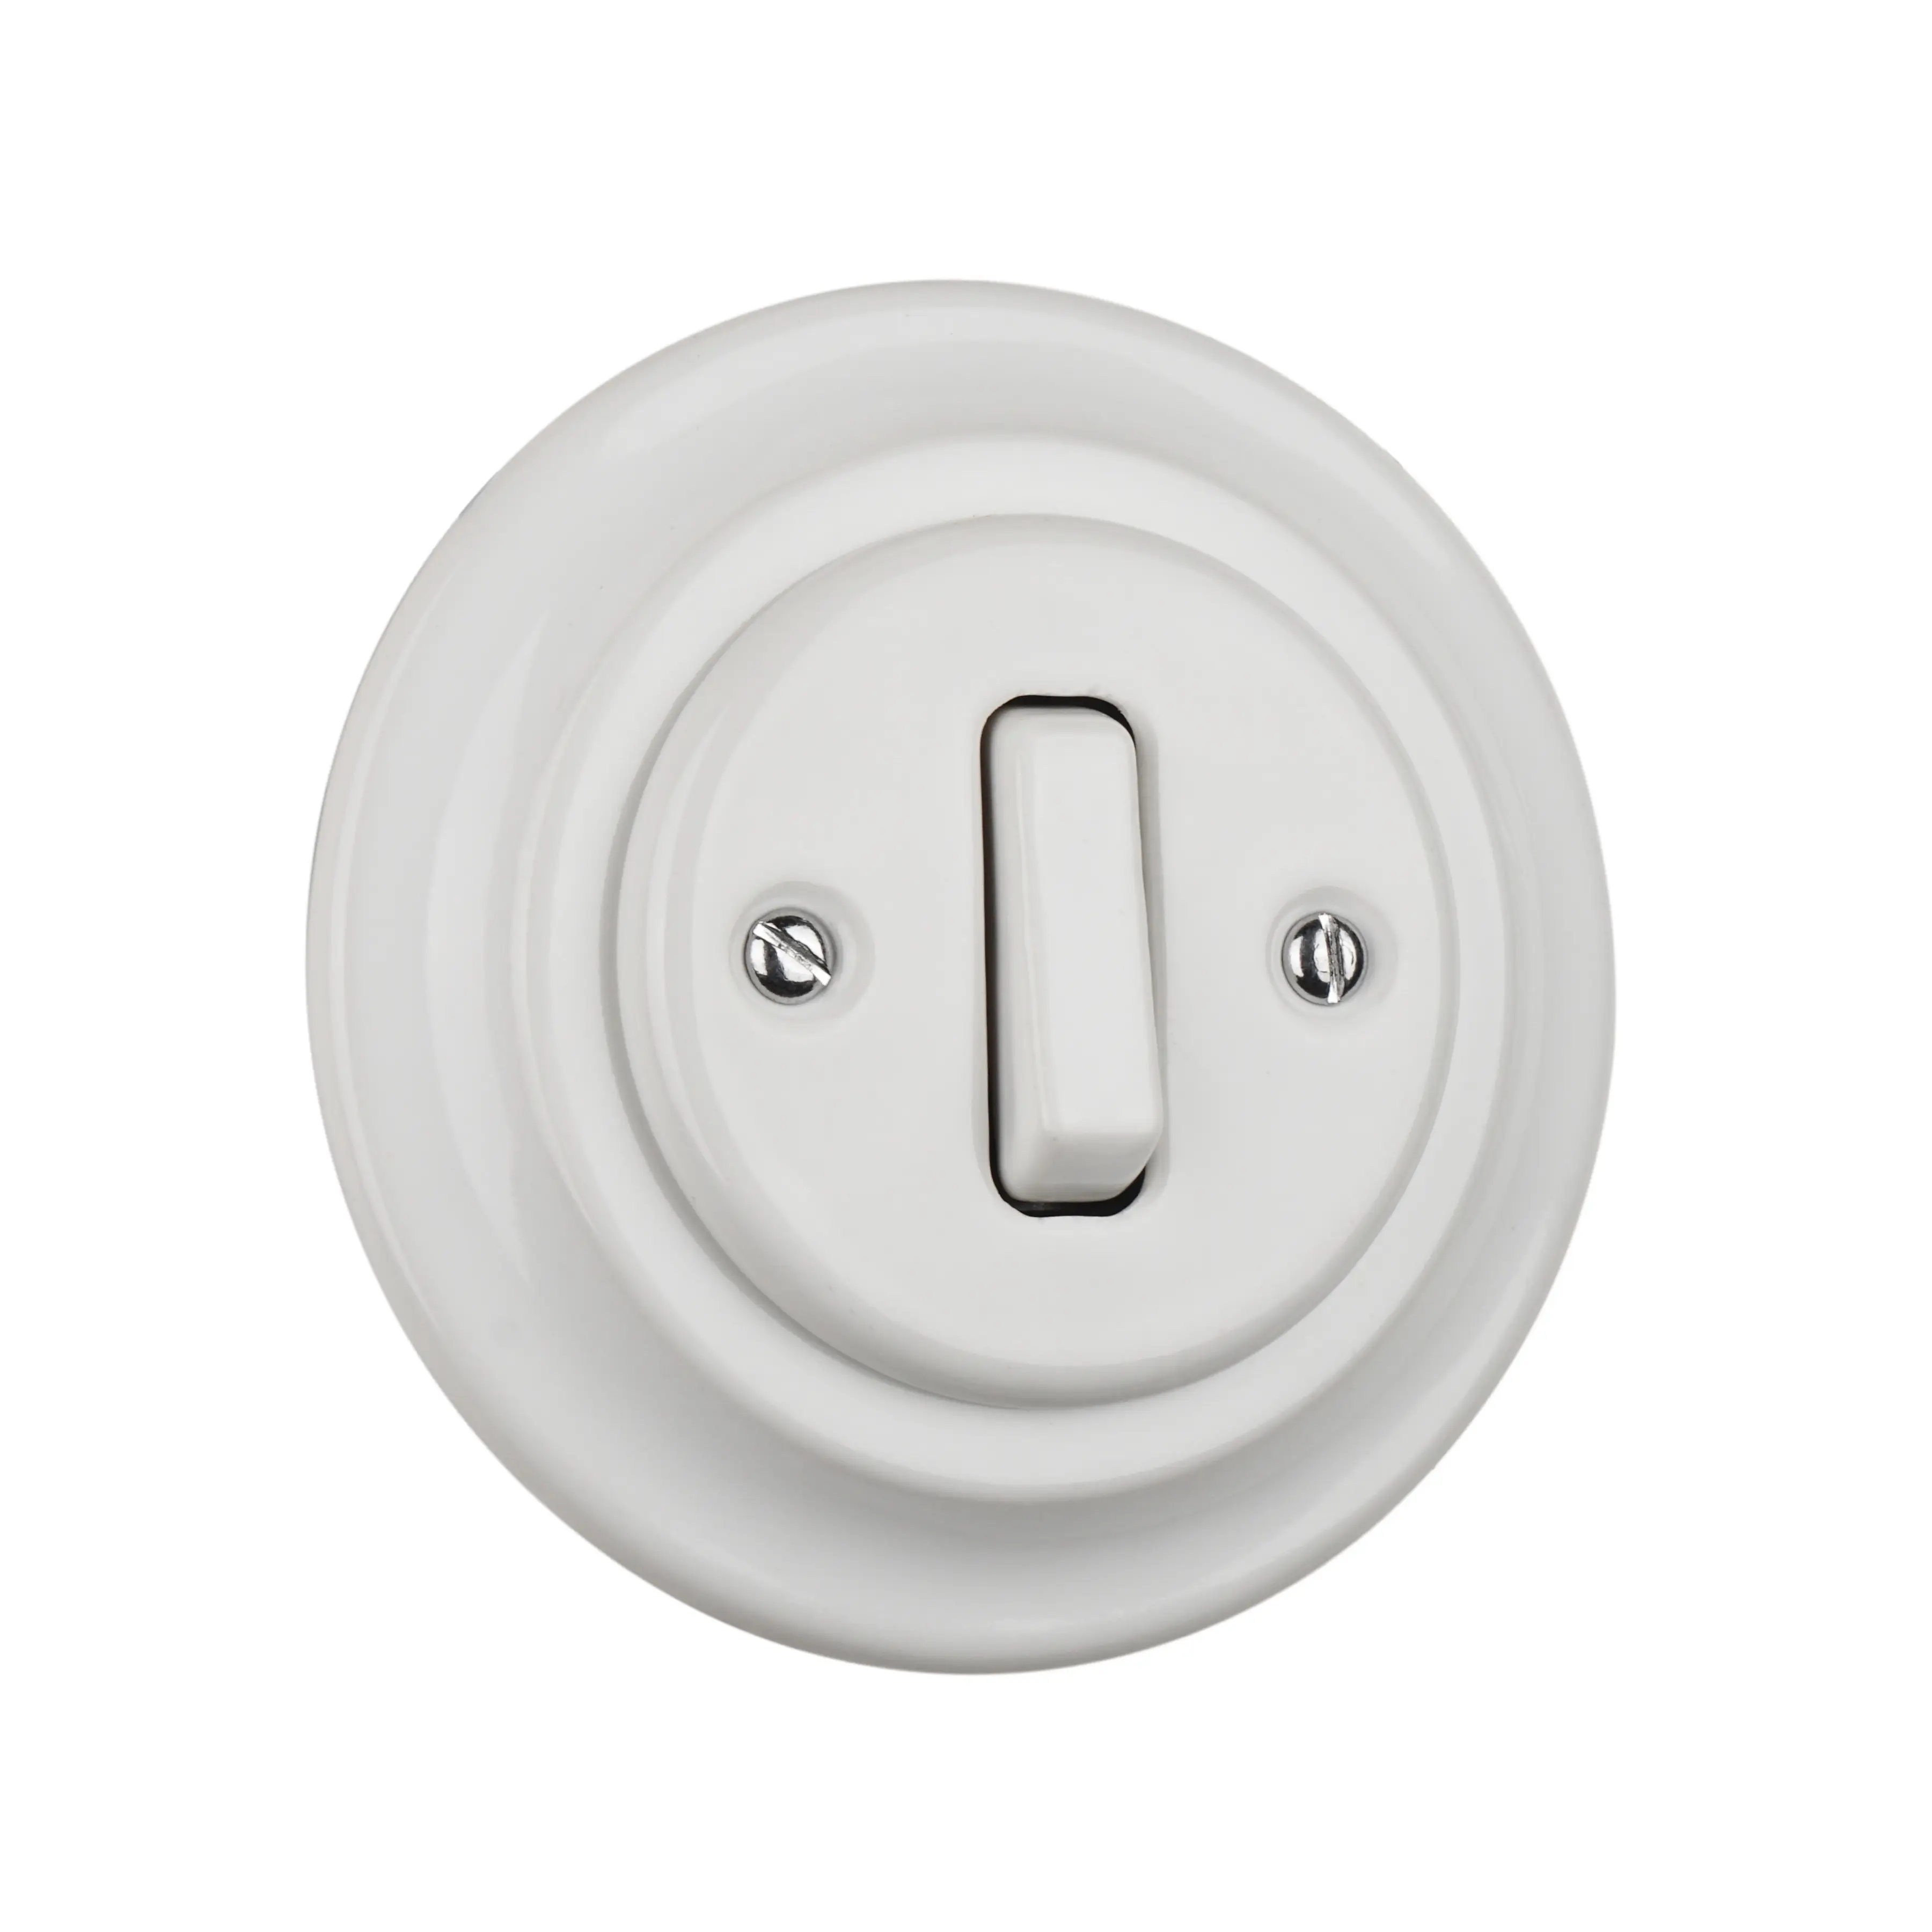 Retro porselen düğmesi anahtarı 1 anahtar, seramik rocker anahtarı, porselen ışık anahtarı